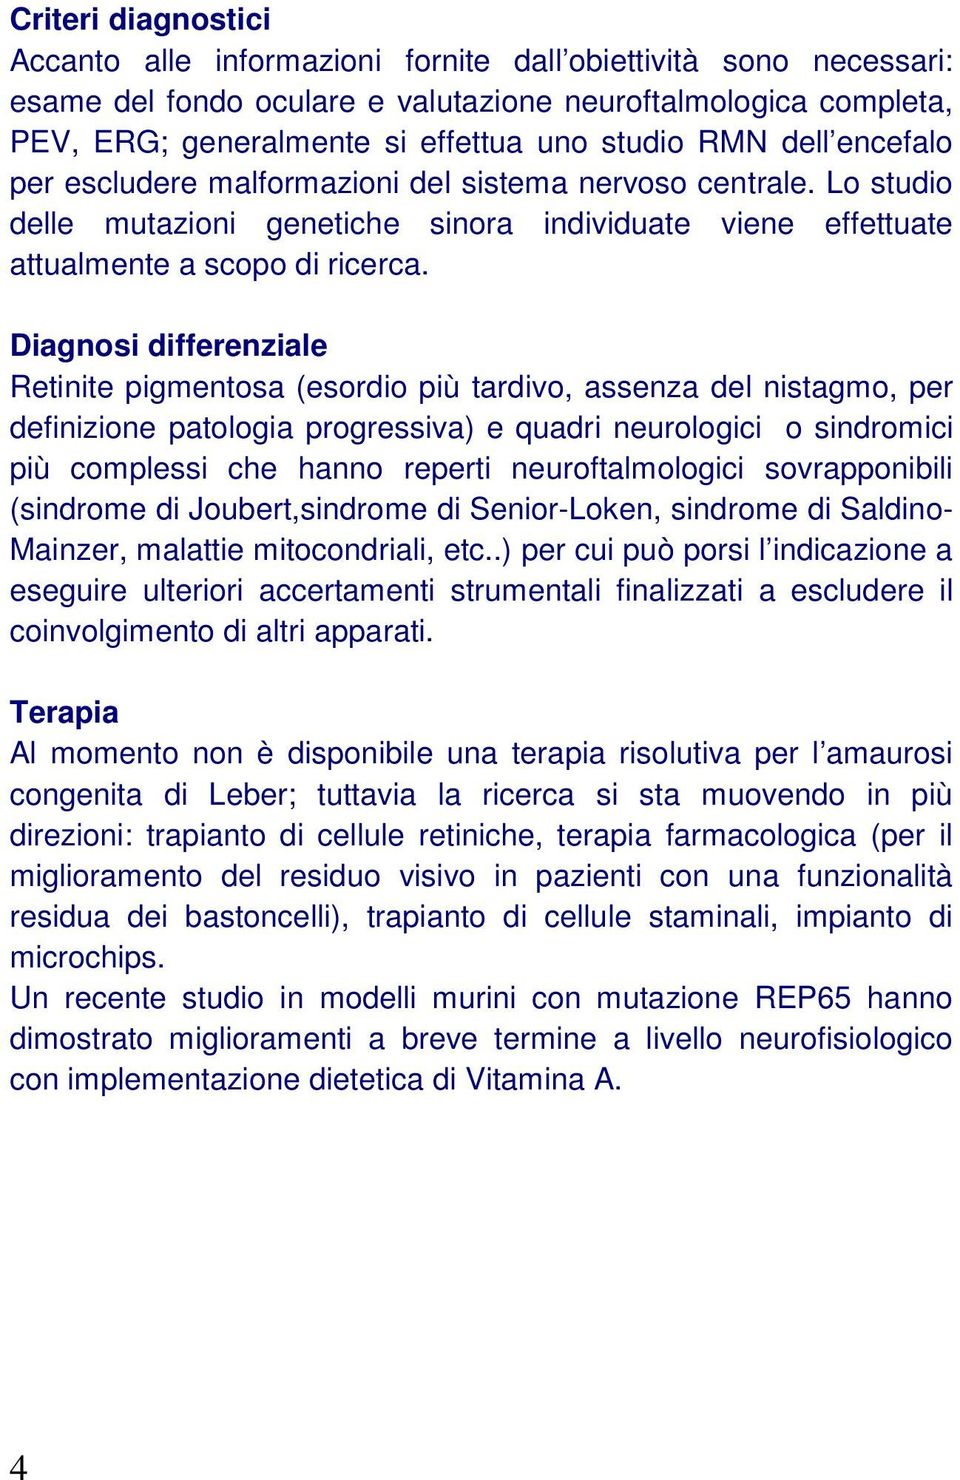 Diagnosi differenziale Retinite pigmentosa (esordio più tardivo, assenza del nistagmo, per definizione patologia progressiva) e quadri neurologici o sindromici più complessi che hanno reperti